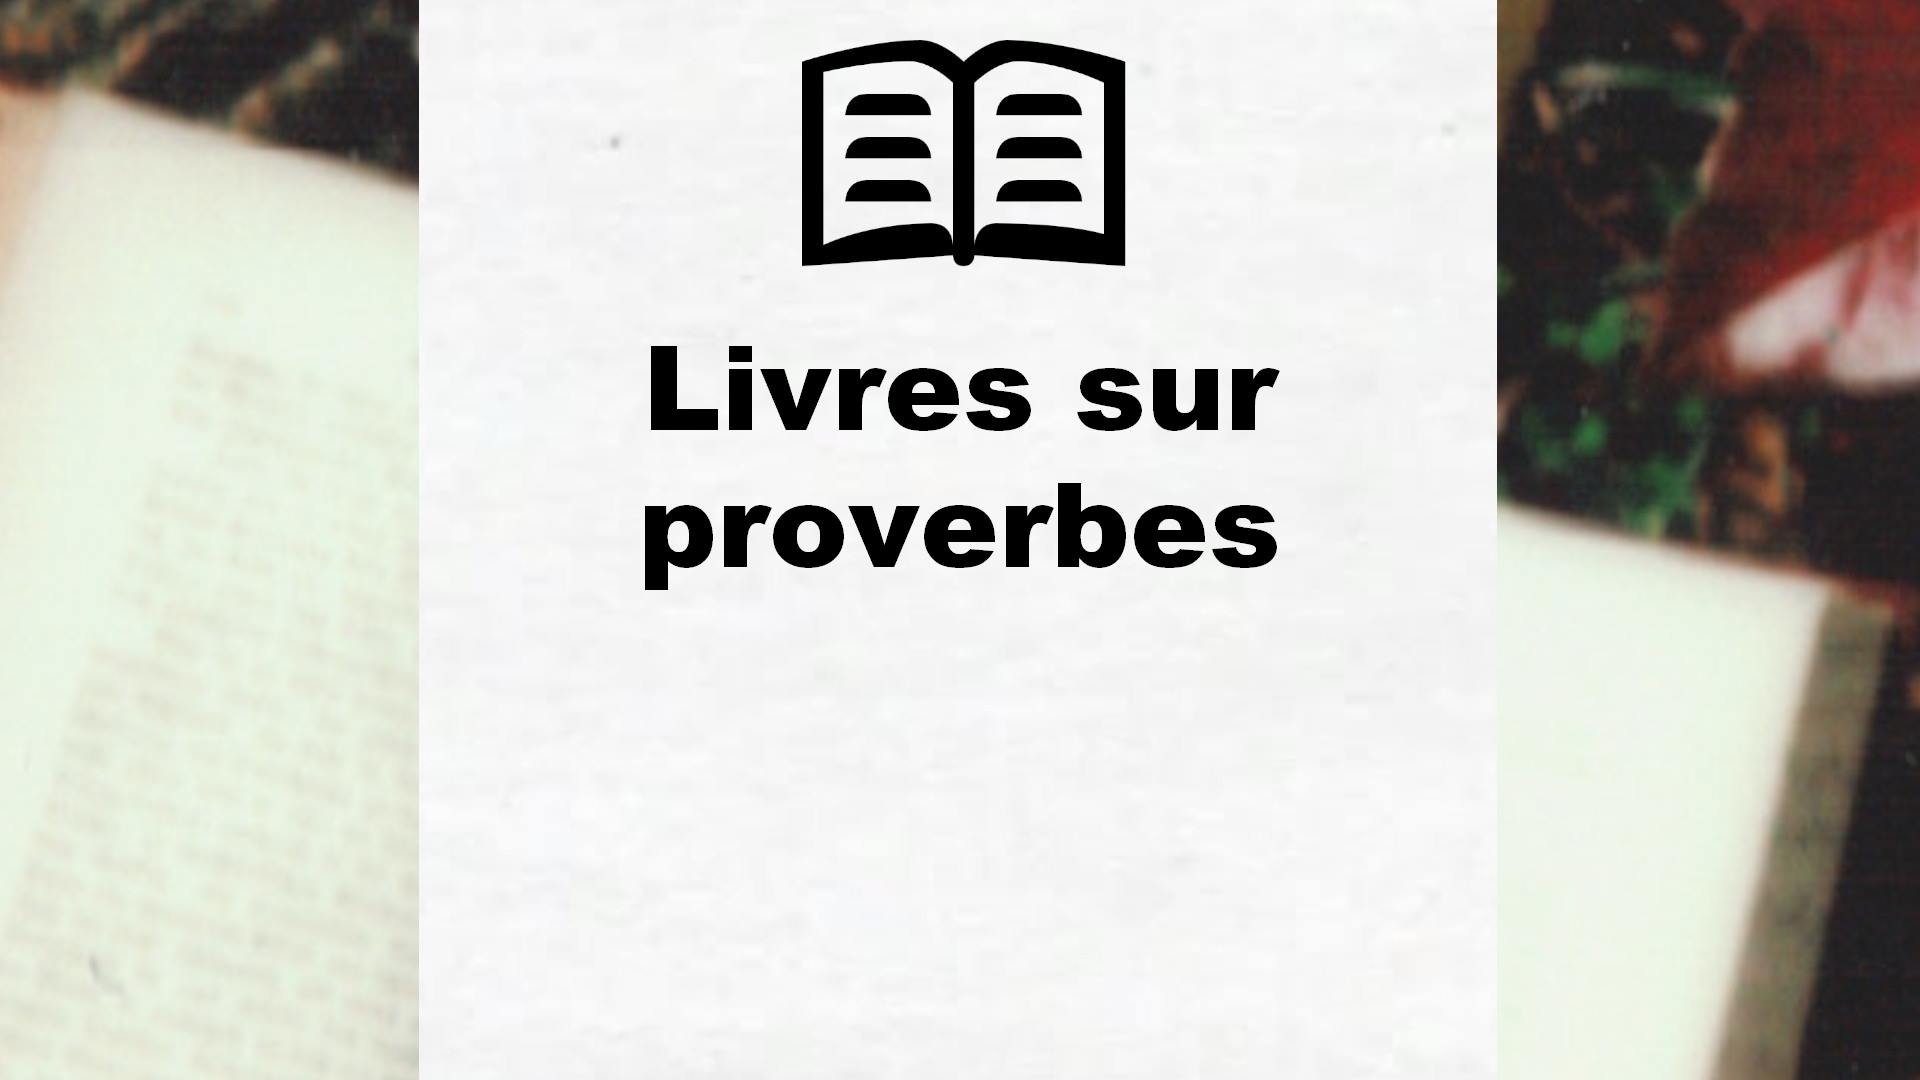 Livres sur proverbes